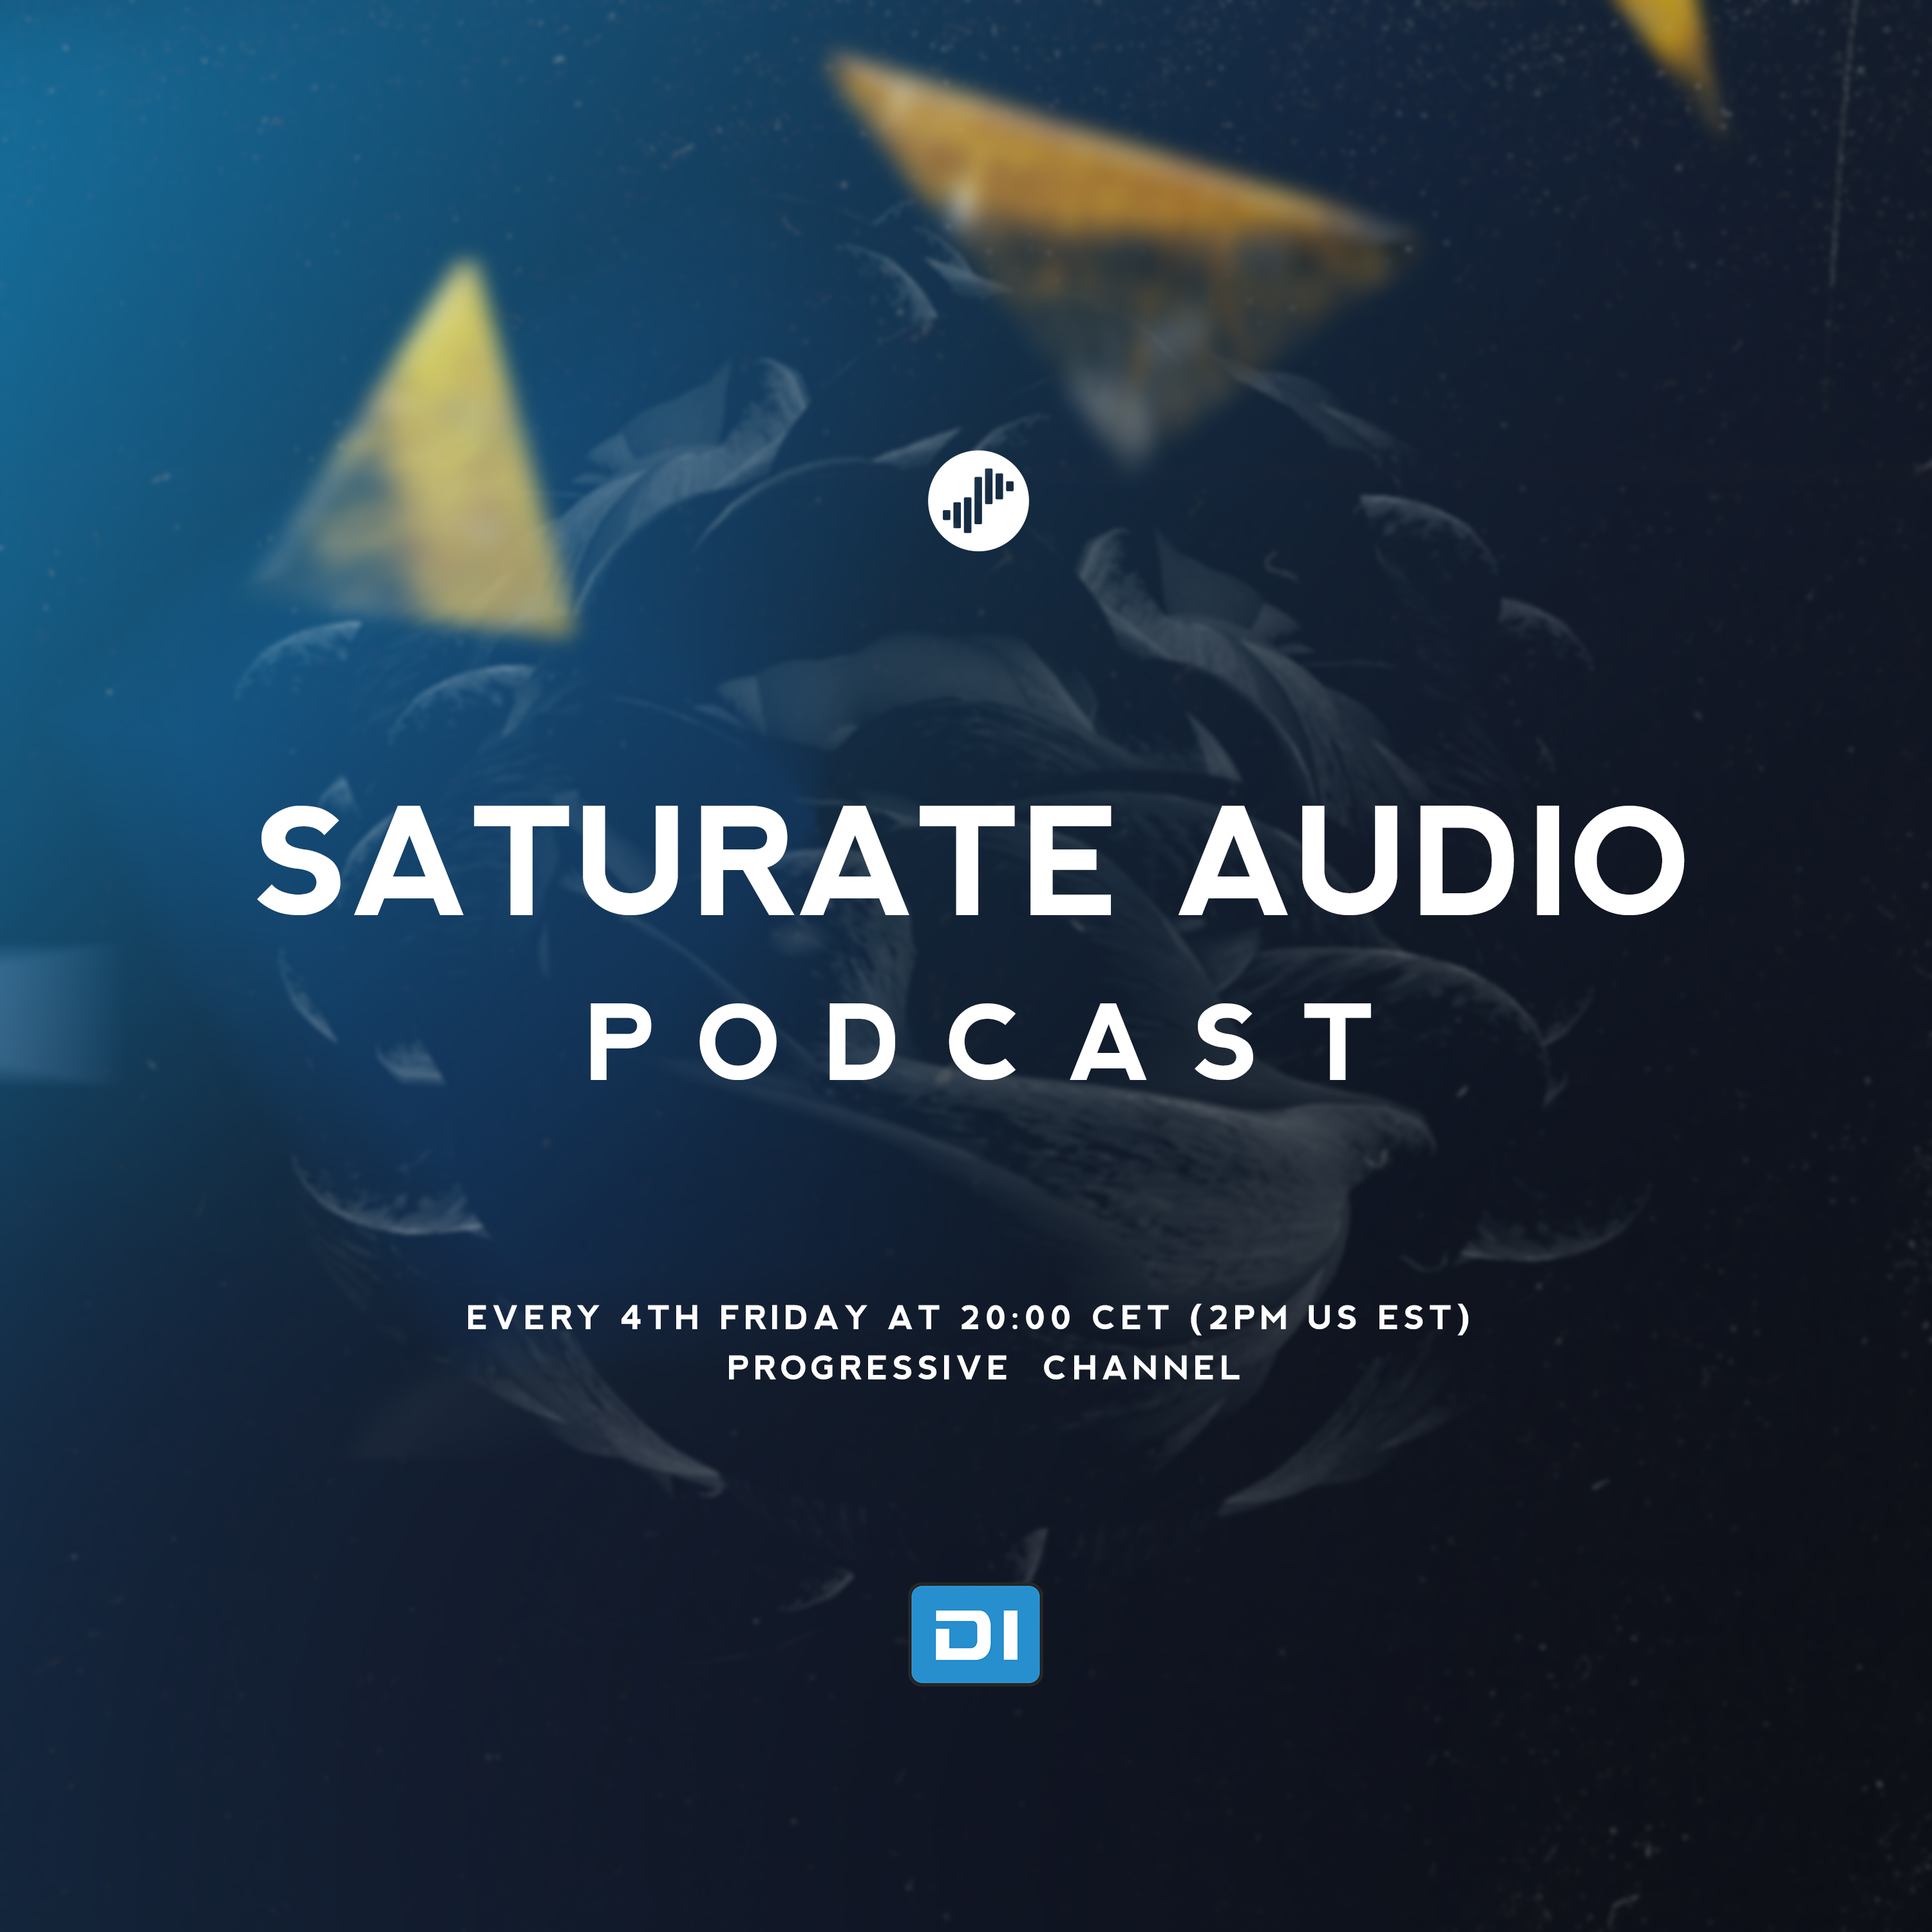 Saturate Audio Podcast